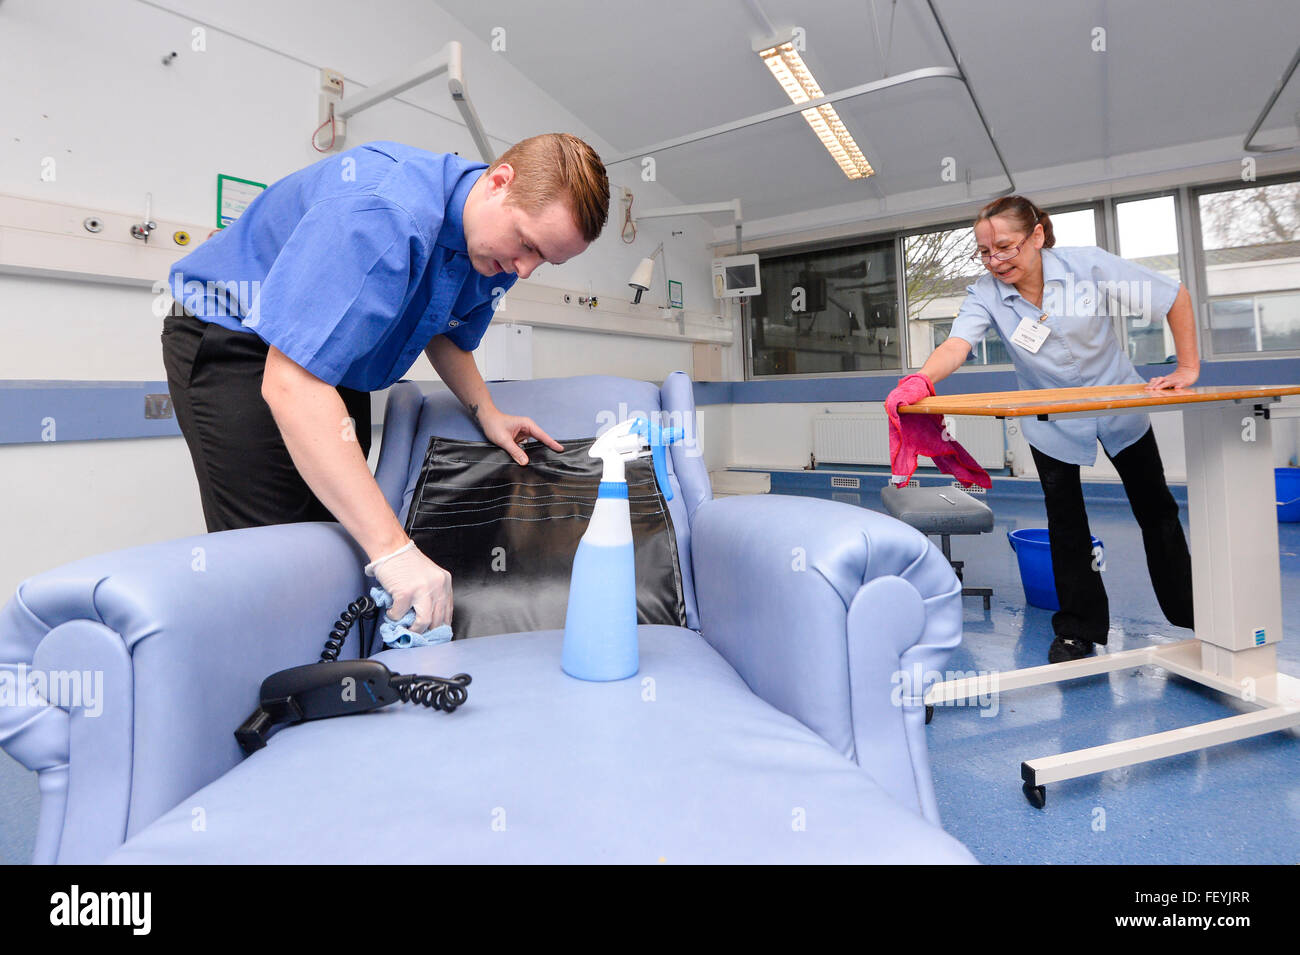 Eine professionelle Reinigung Team Peeling, sprühen und wischen Sie alle Flächen in Krankenzimmern.  Bildnachweis: Euan Cherry Stockfoto